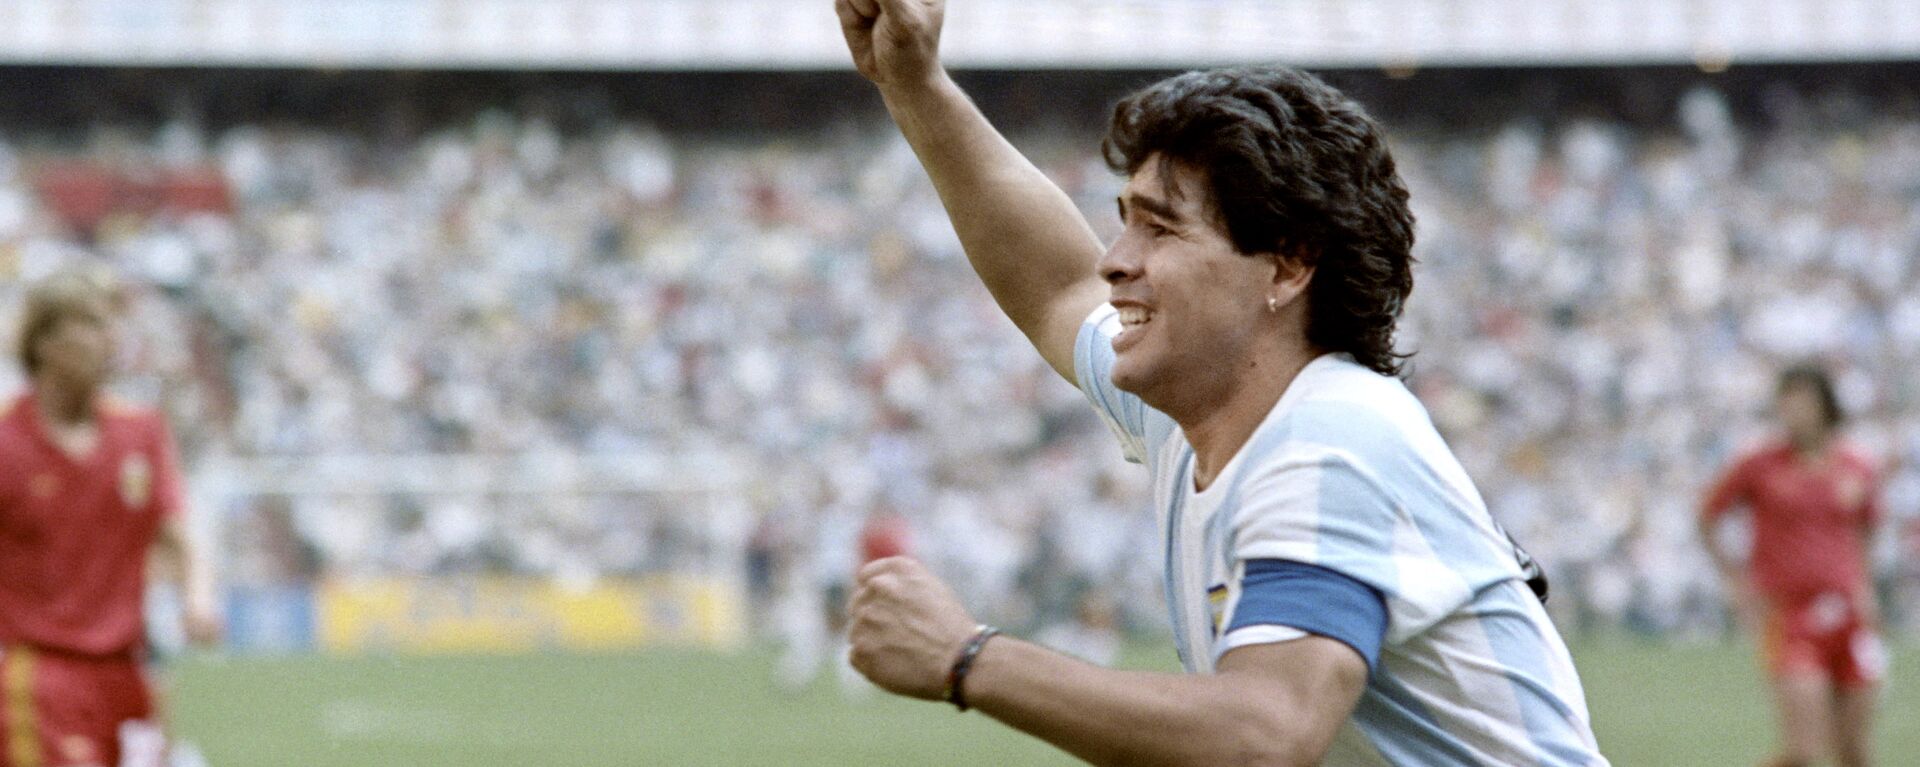 Futbolista Diego Maradona durante la Copa Mundial 1986 - Sputnik Mundo, 1920, 16.09.2021